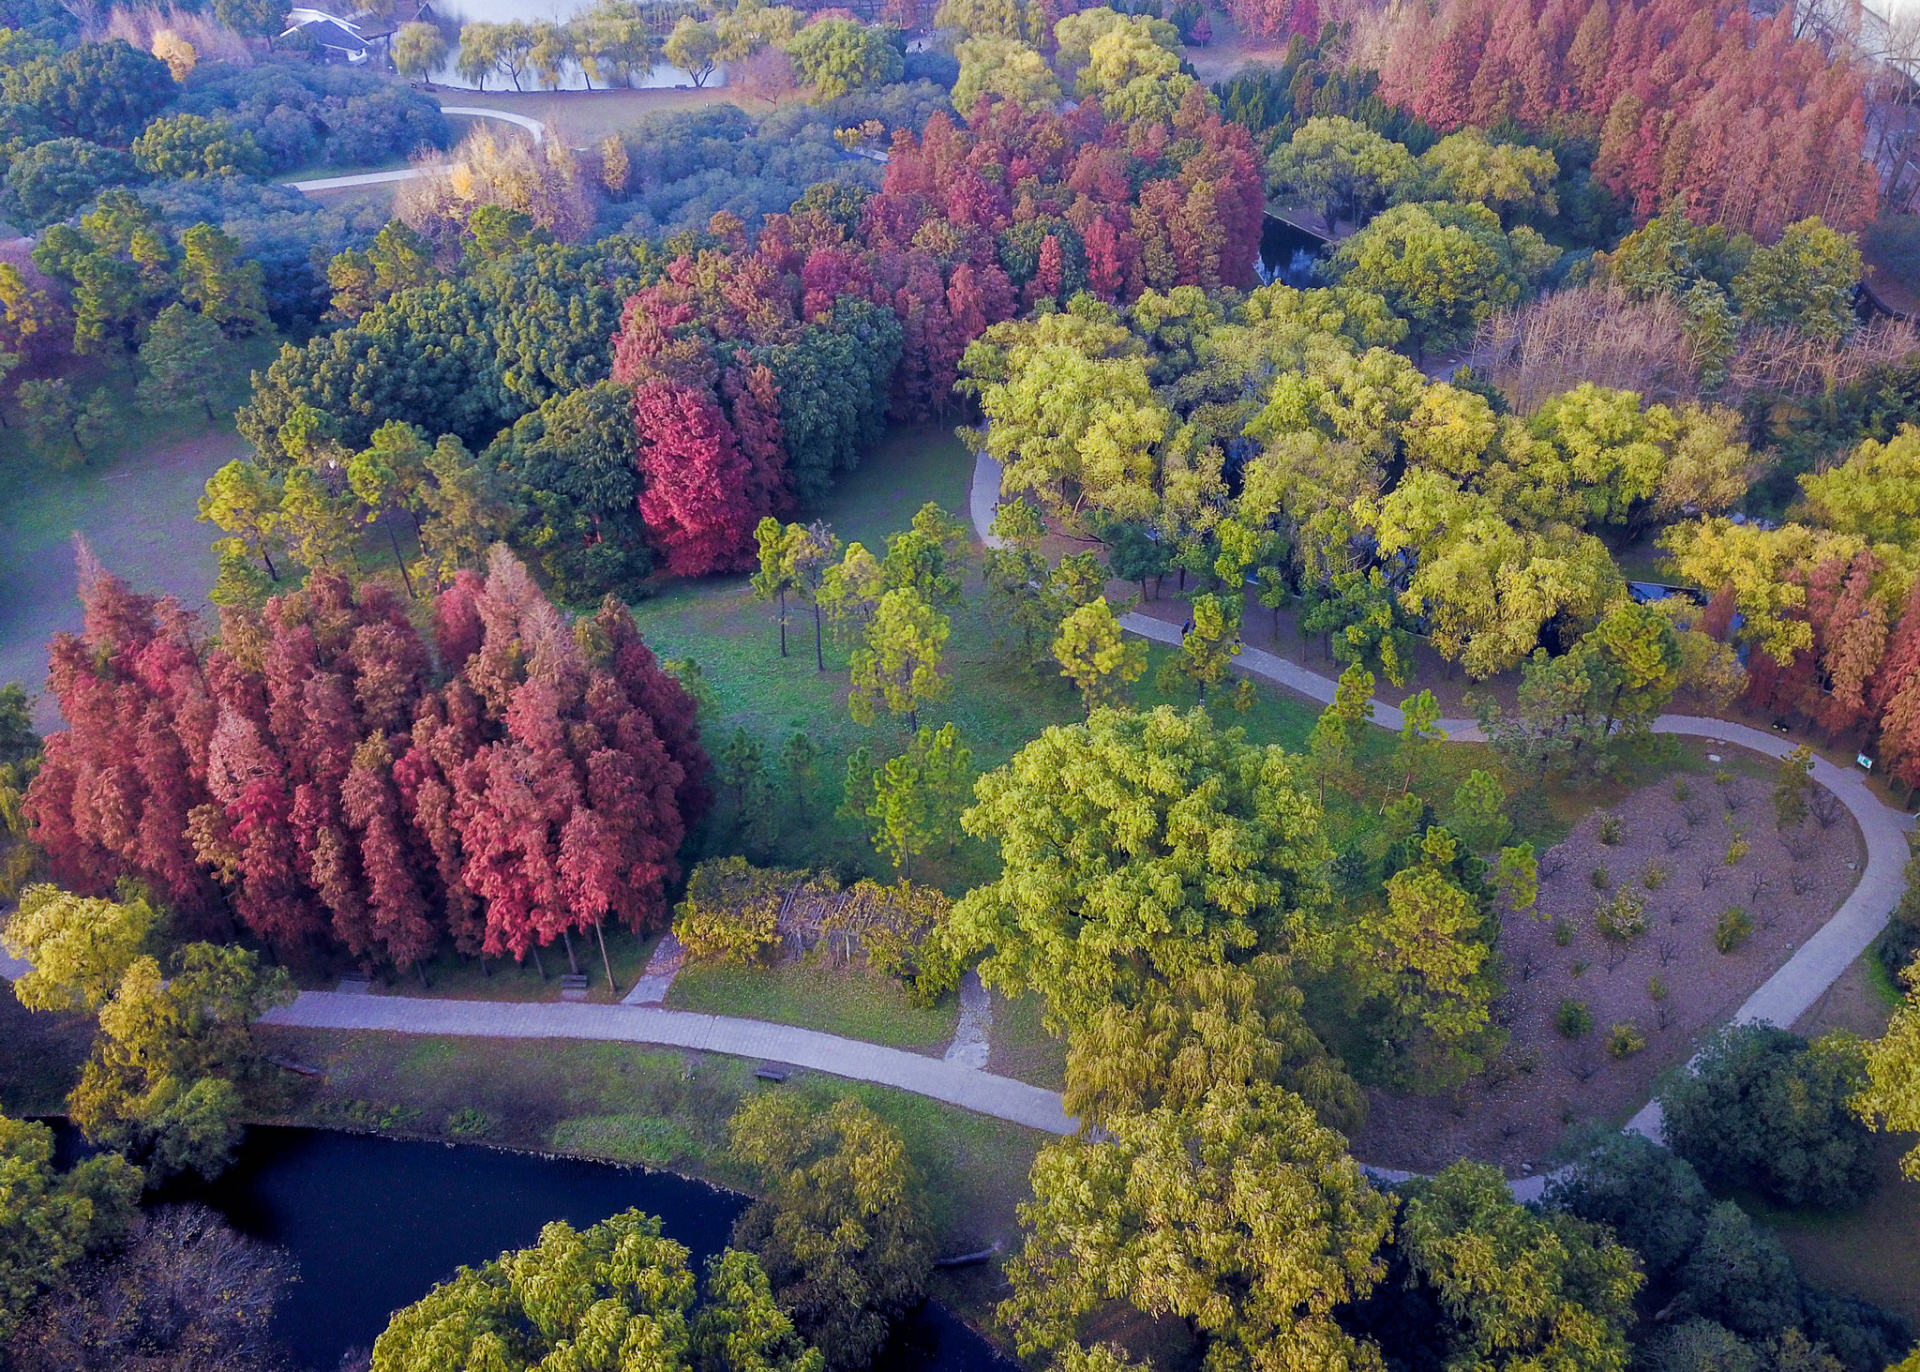 上海共青森林公园照片图片